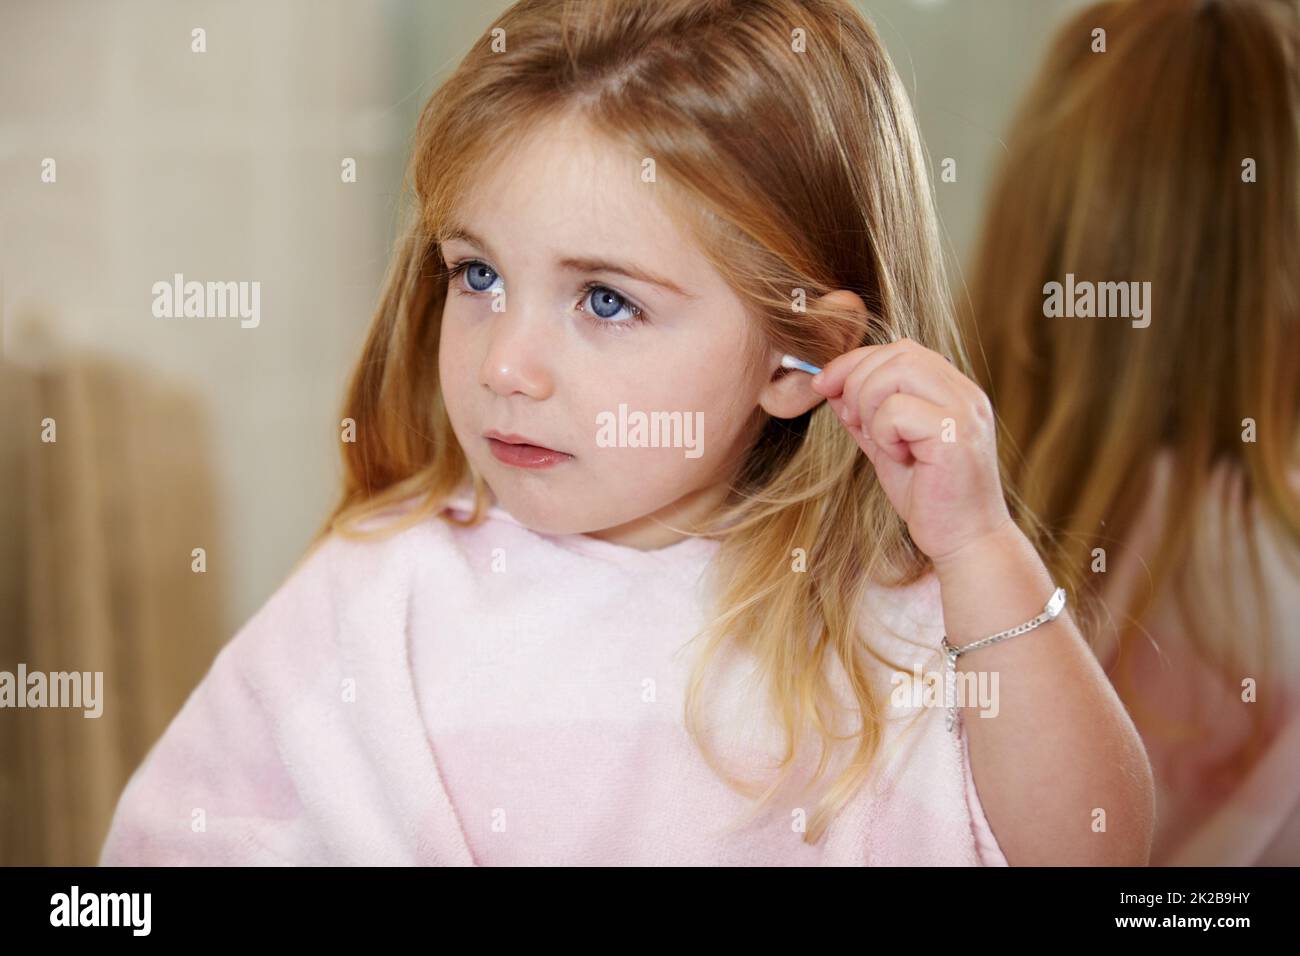 Sicherstellen, dass sie richtig reinigt. Nettes kleines Mädchen, das ihre Ohren mit einem Ohrstöpsel putzt. Stockfoto